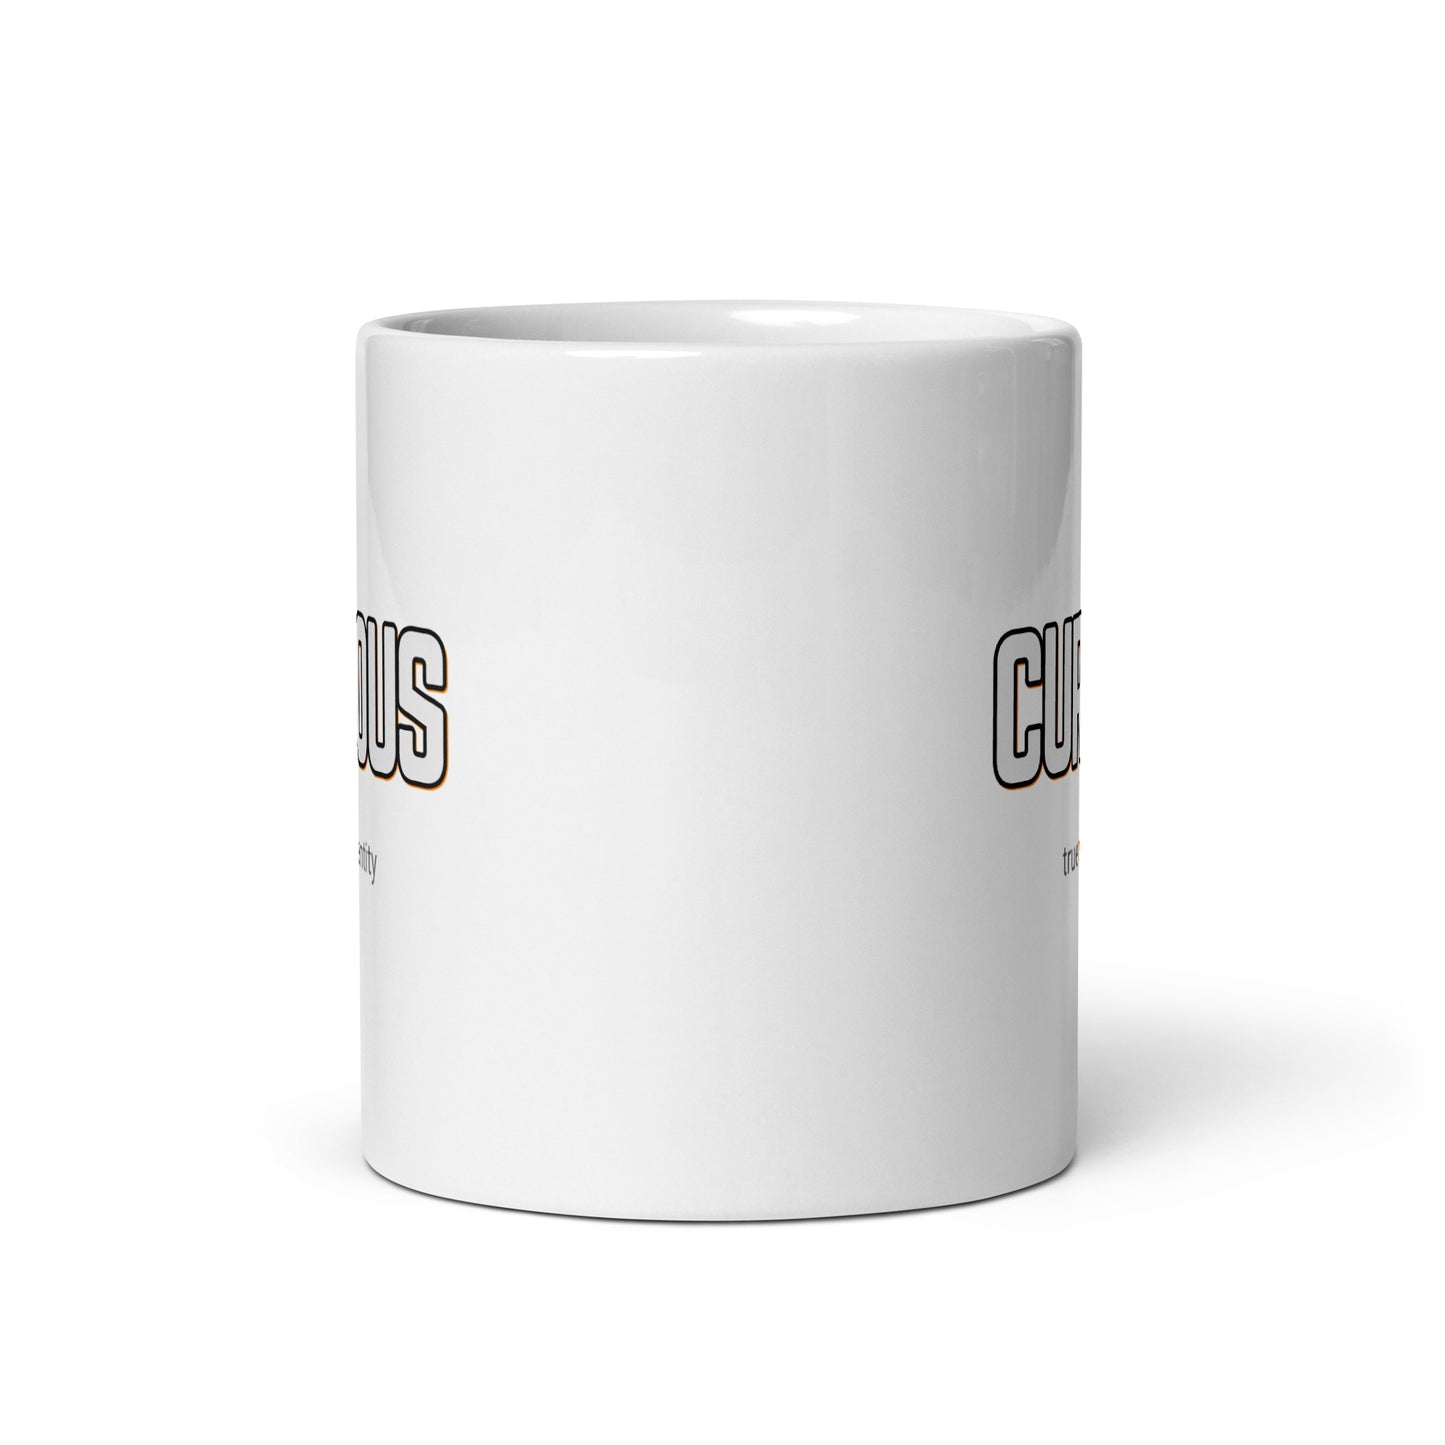 CURIOUS White Coffee Mug Bold 11 oz or 15 oz